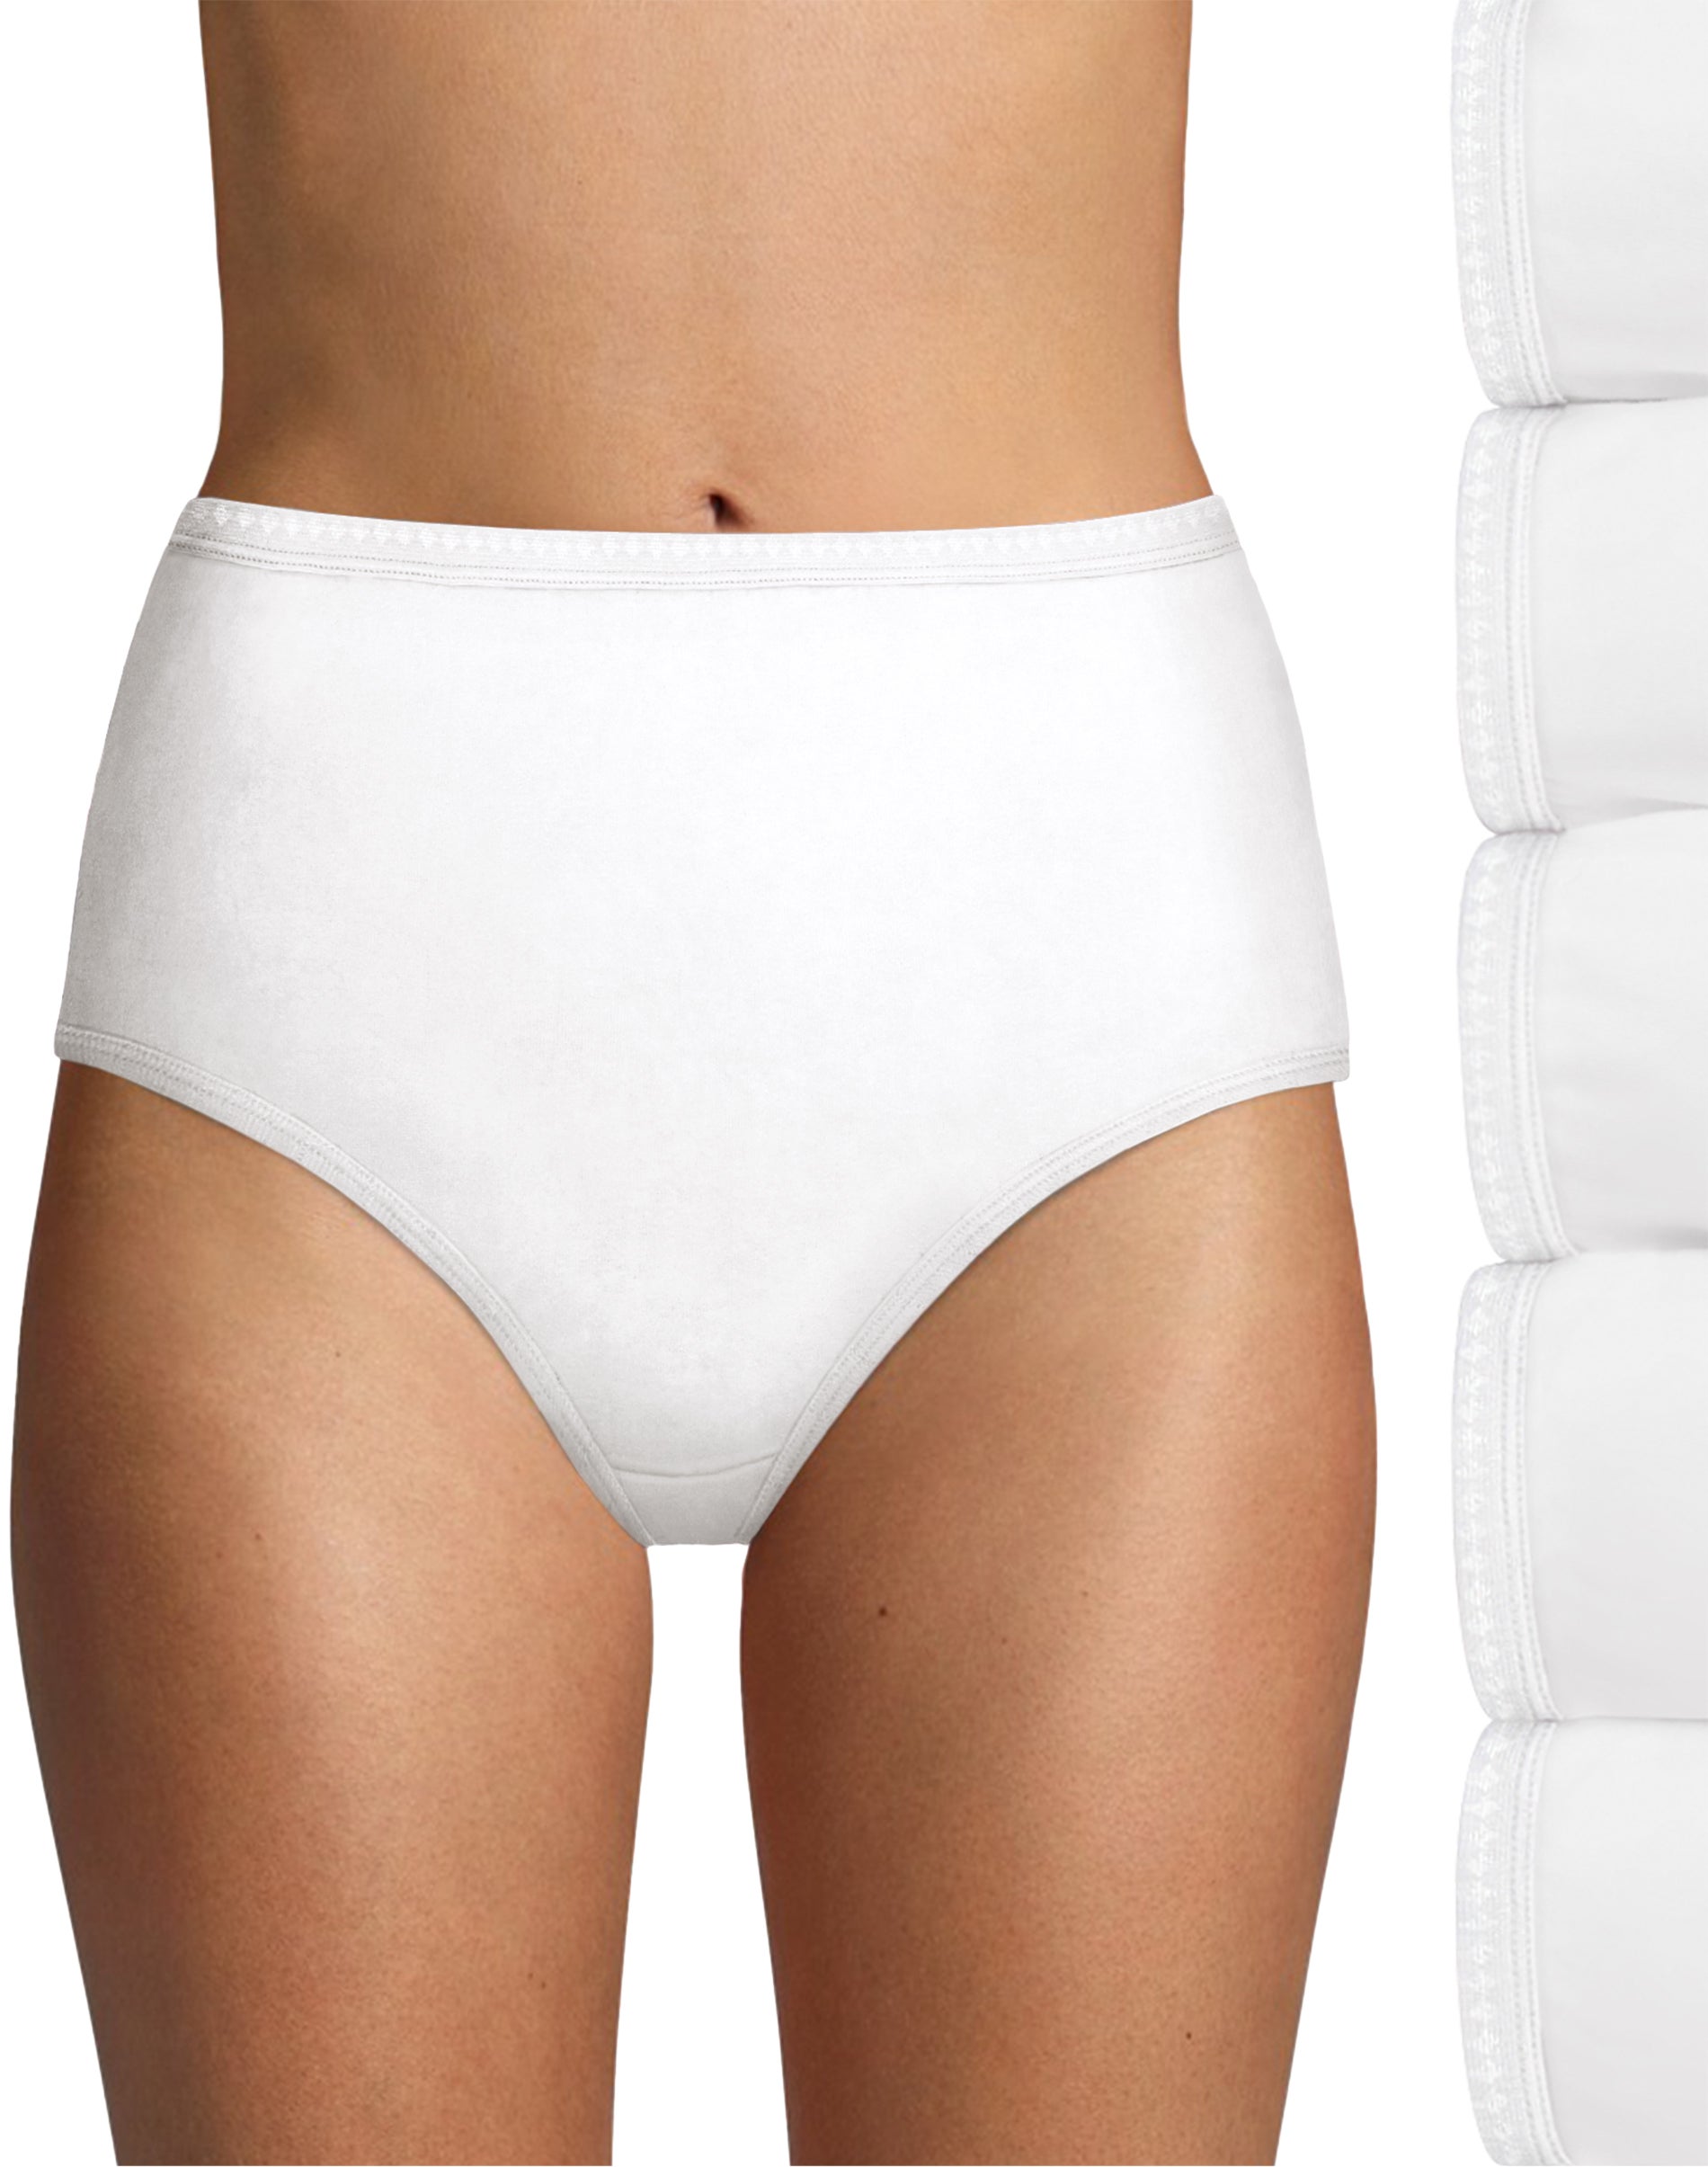 Hanes Women's Constant Comfort® X-Temp® Hi-Cut Panties 3-Pack Assorted 7 